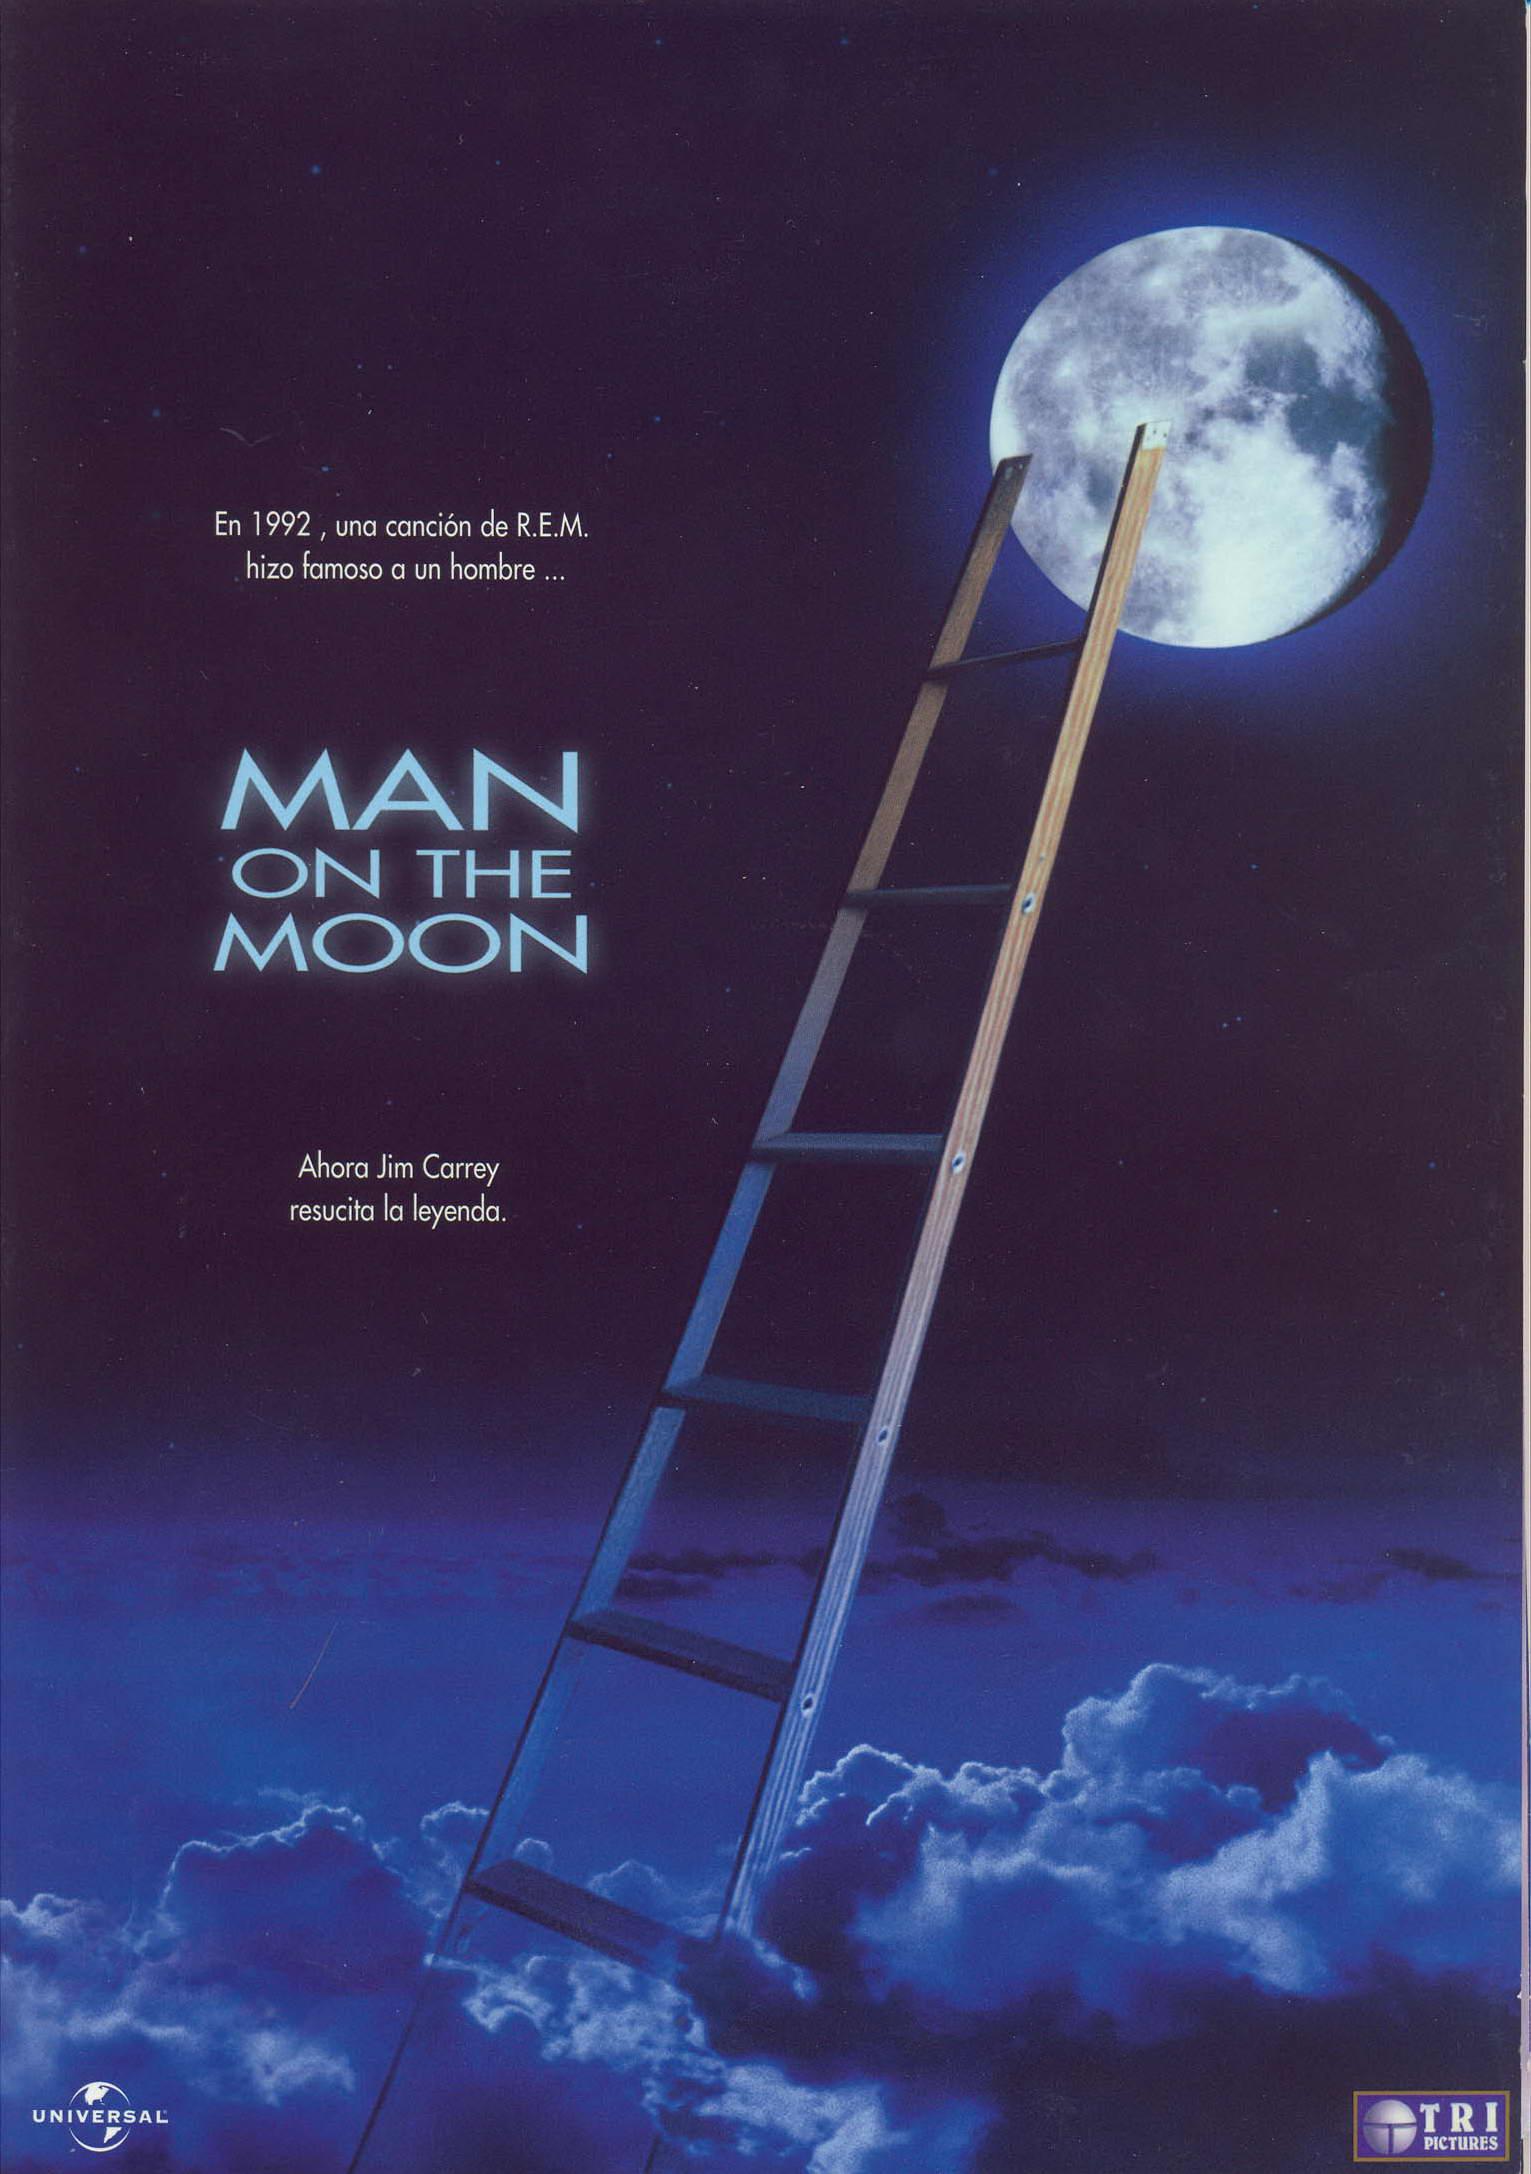 Постер - Человек на луне: 1531x2174 / 209 Кб